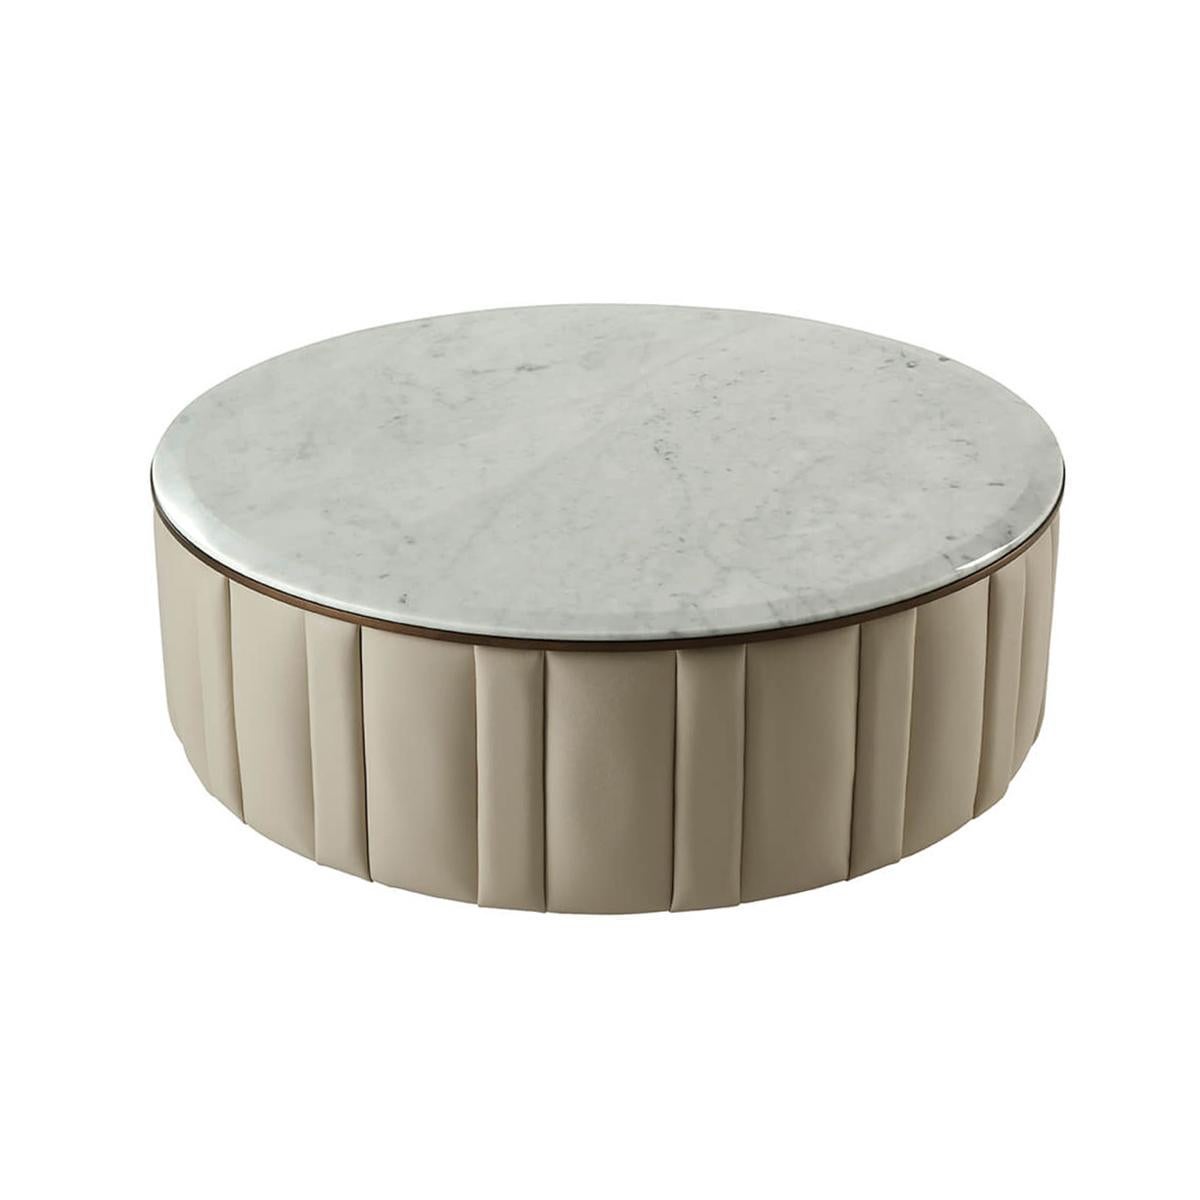 Avec un plateau rond en marbre Bianco Carrara à bord biseauté, avec des côtés rembourrés en cuir dans un design cannelé avec une moulure de finition Heritage Bronze.
Dimensions : 47.25